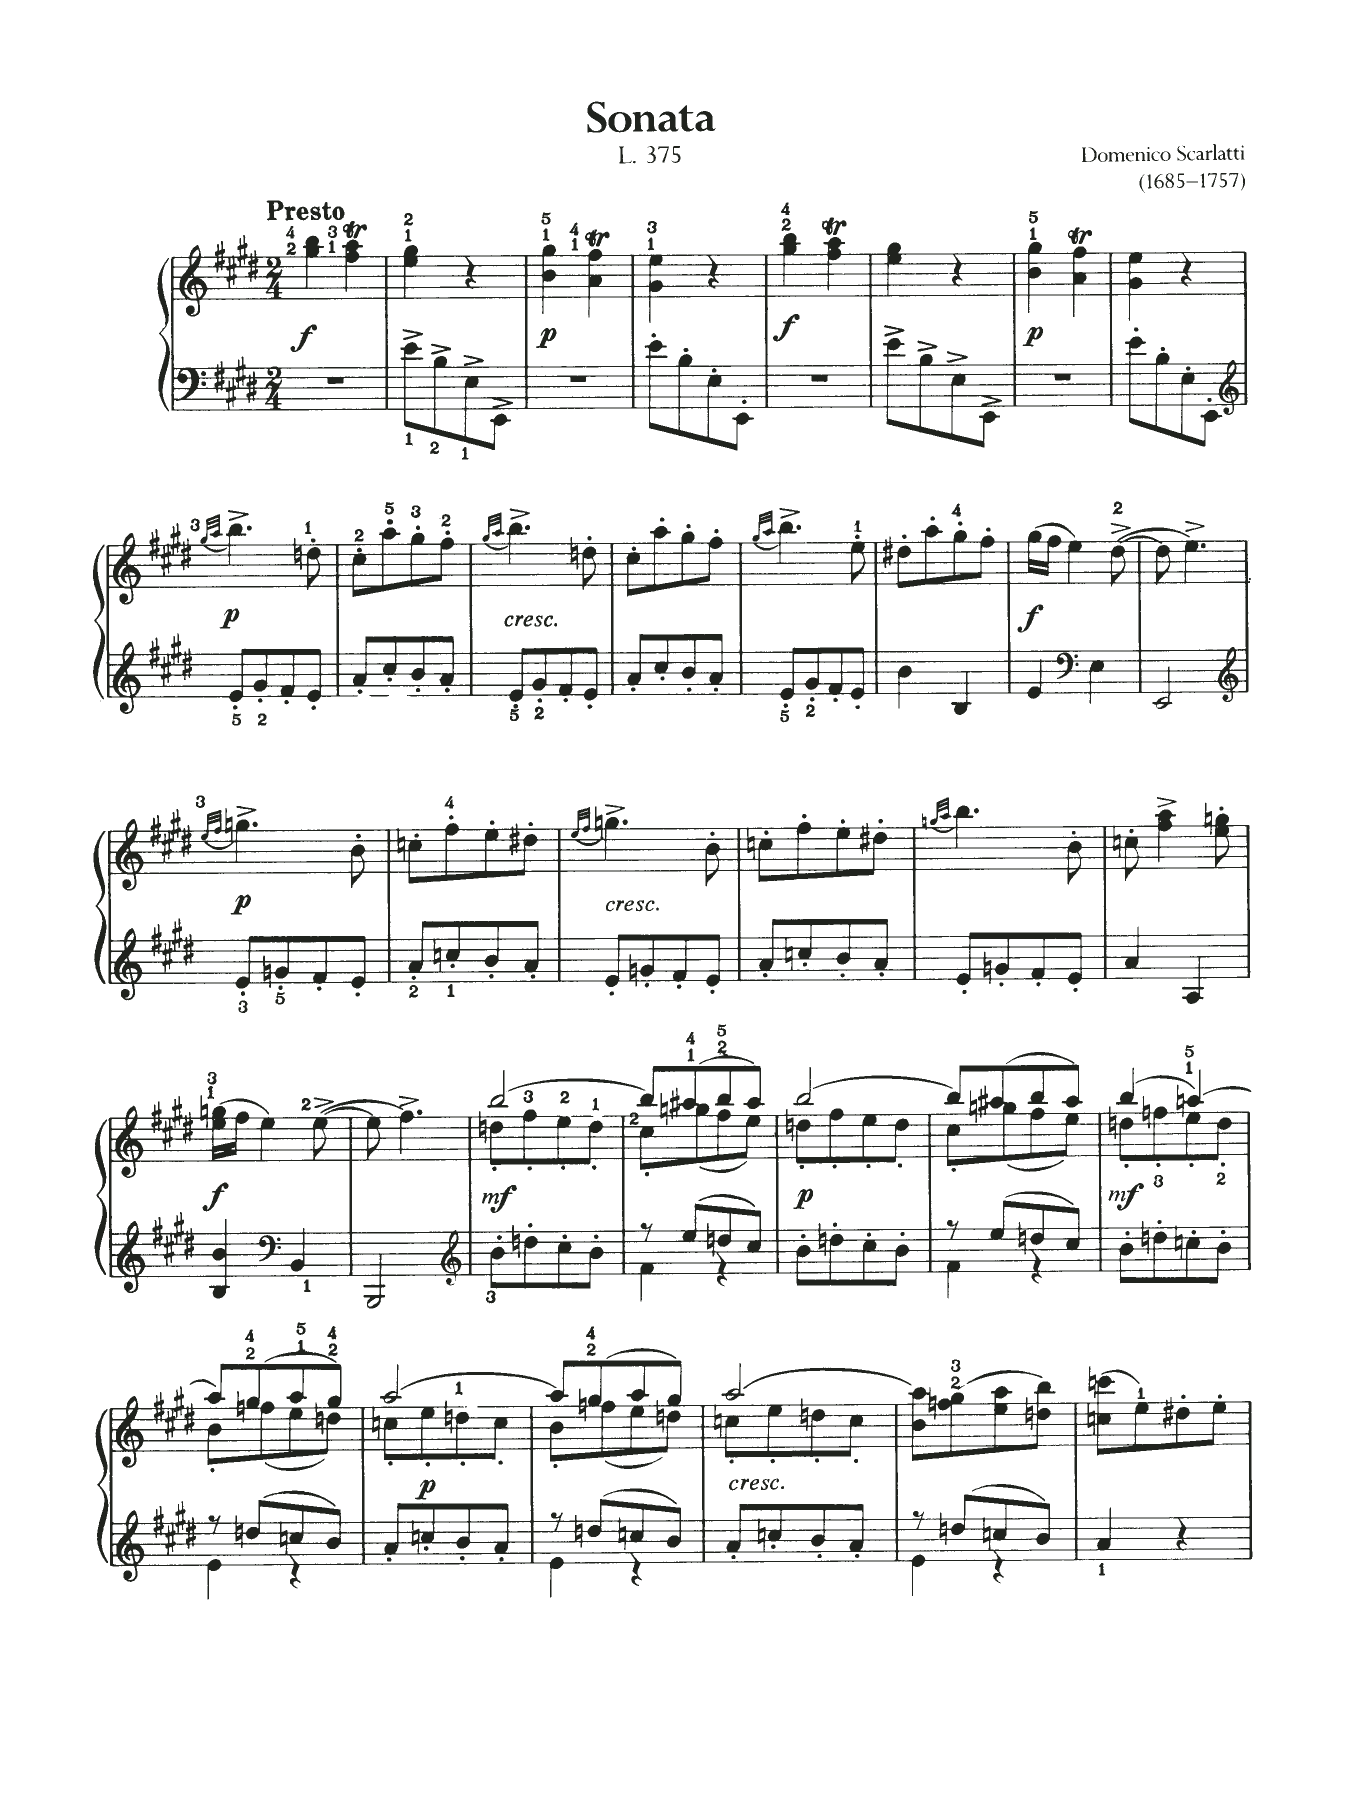 Download Domenico Scarlatti Sonata, L375 Sheet Music and learn how to play Piano PDF digital score in minutes